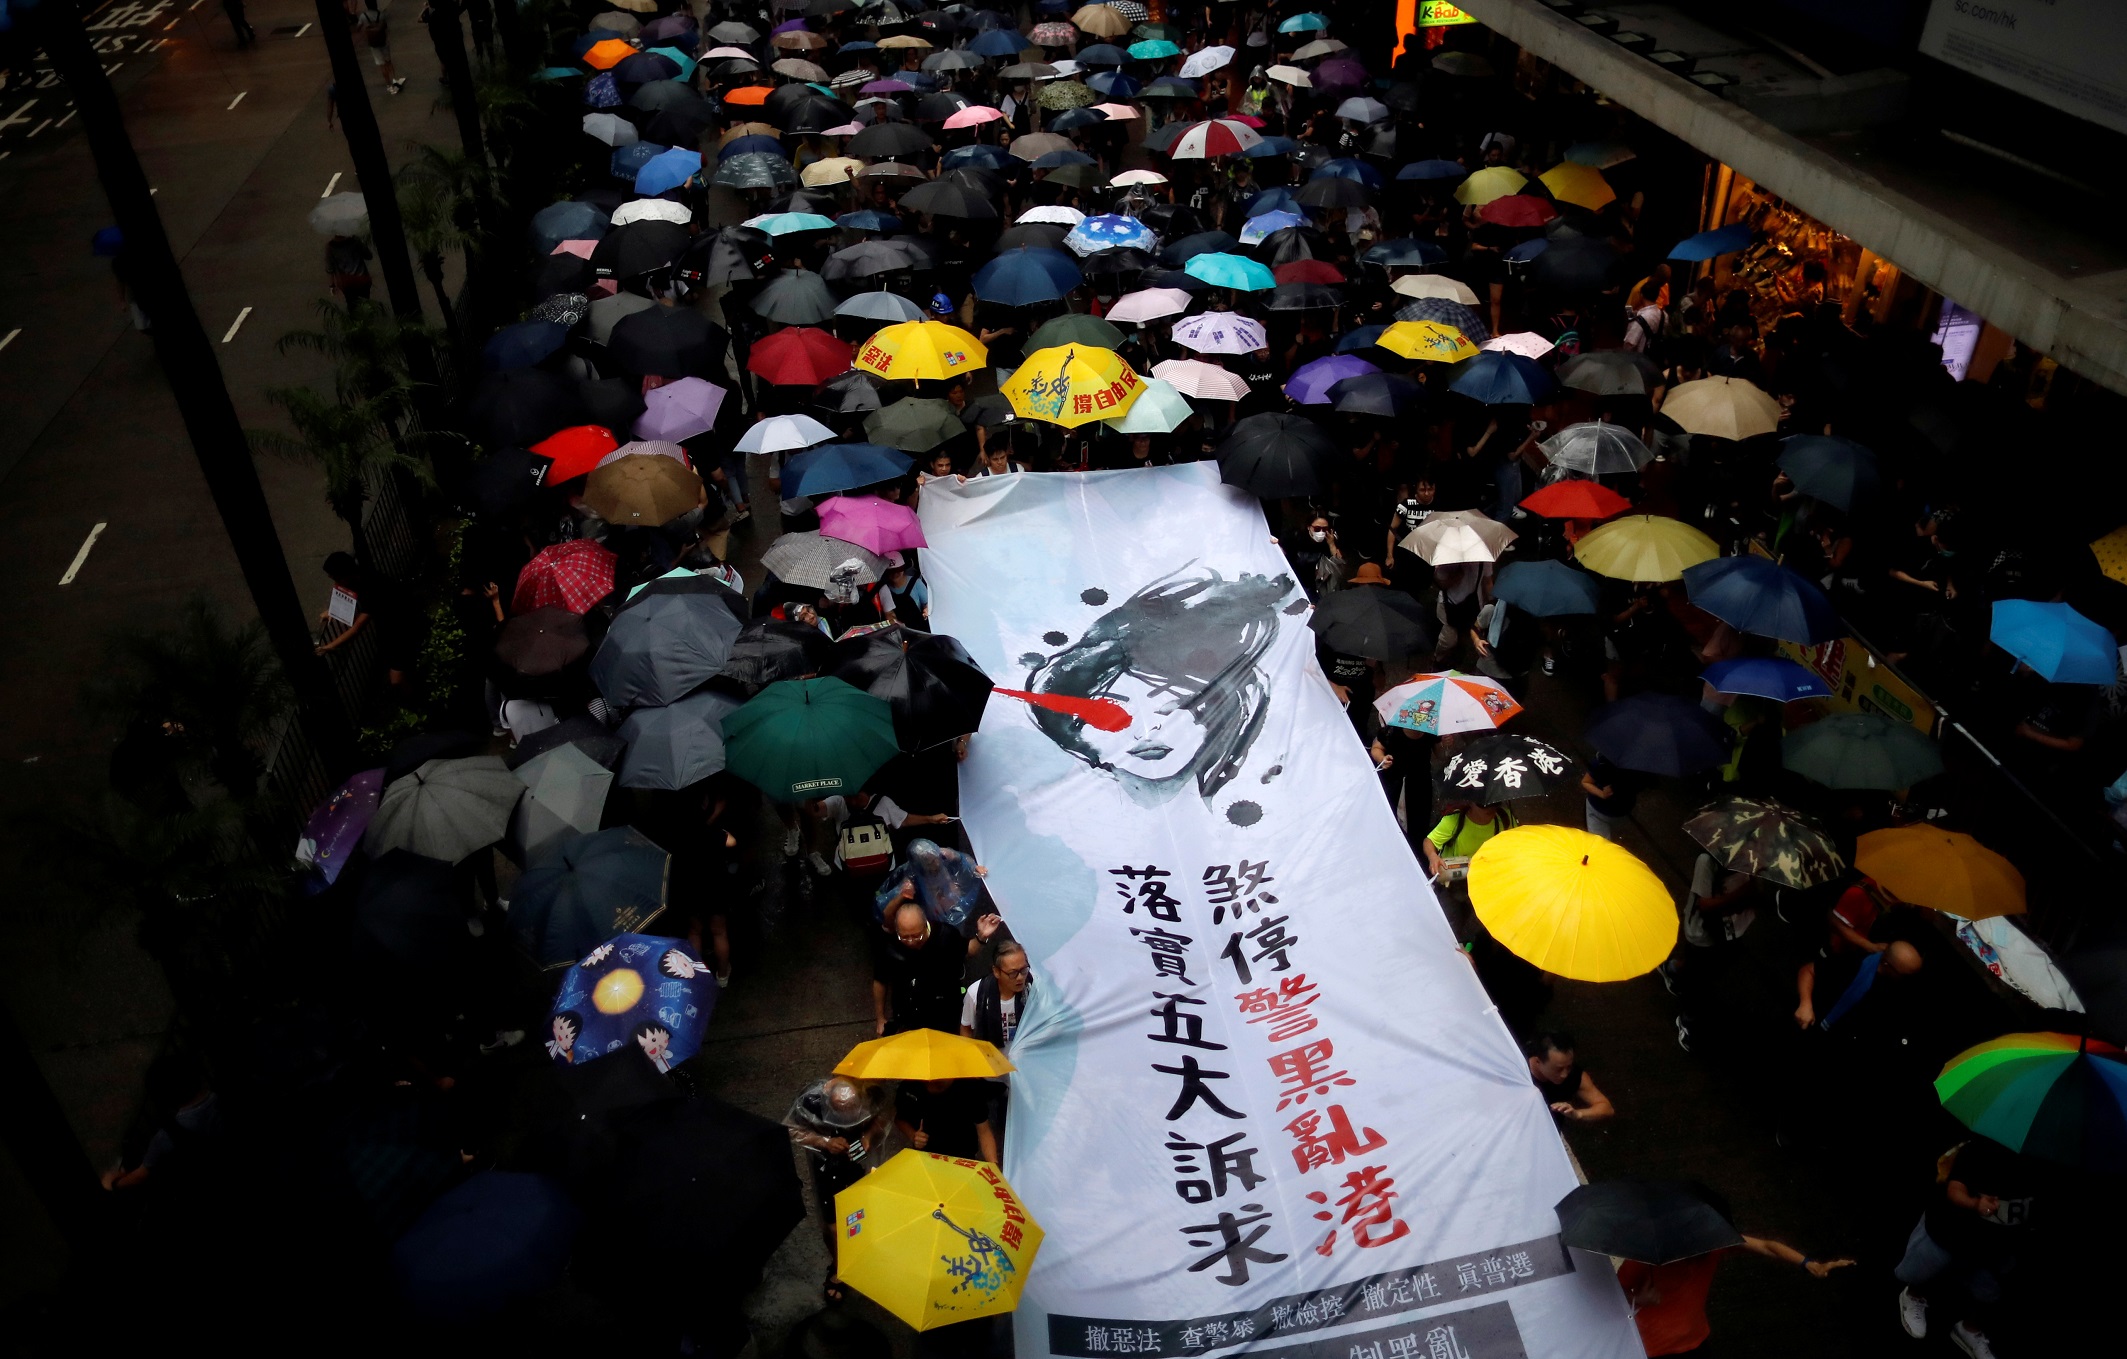 مسيرة مطالبة بالديمقراطية والإصلاحات السياسية في هونغ كونغ، 18 آب/أغسطس 2019. (كيم هونغ جي/ رويترز)